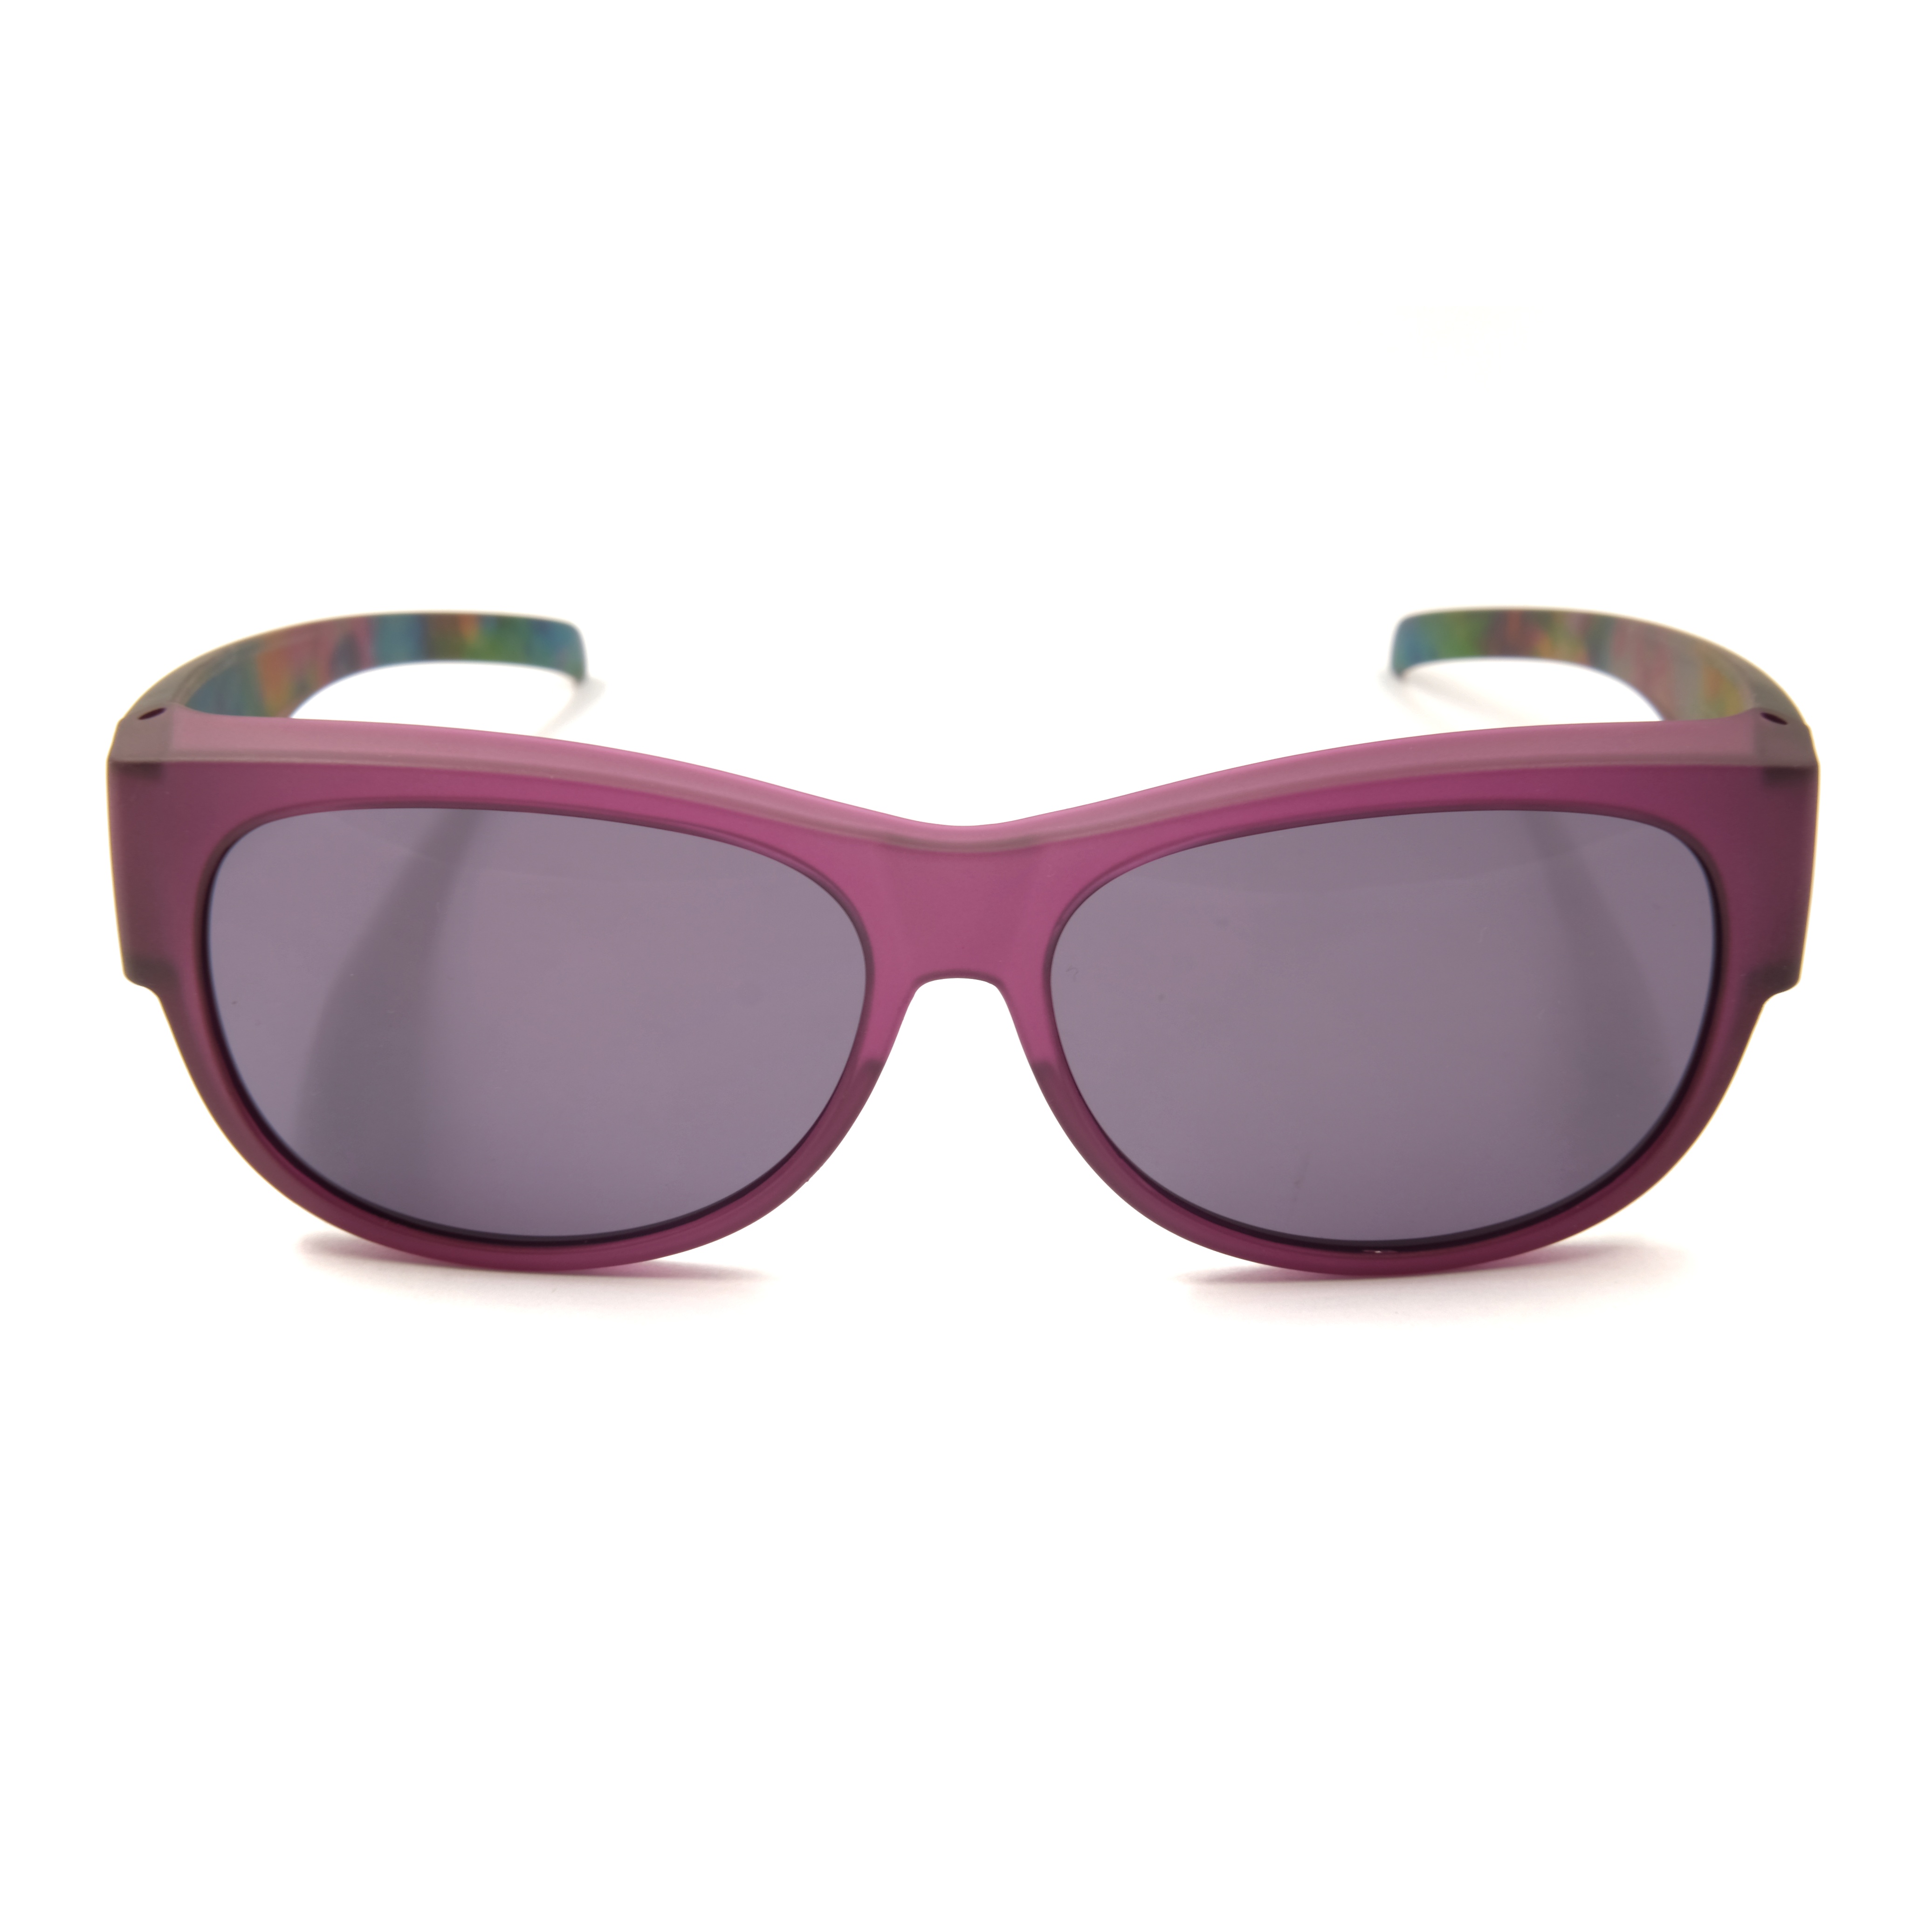 Gafas de sol de ajuste personalizado para conducir, gafas de sol polarizadas de río Fitover para mujer, gafas de sol de gran tamaño para hombre, adecuadas para miopía